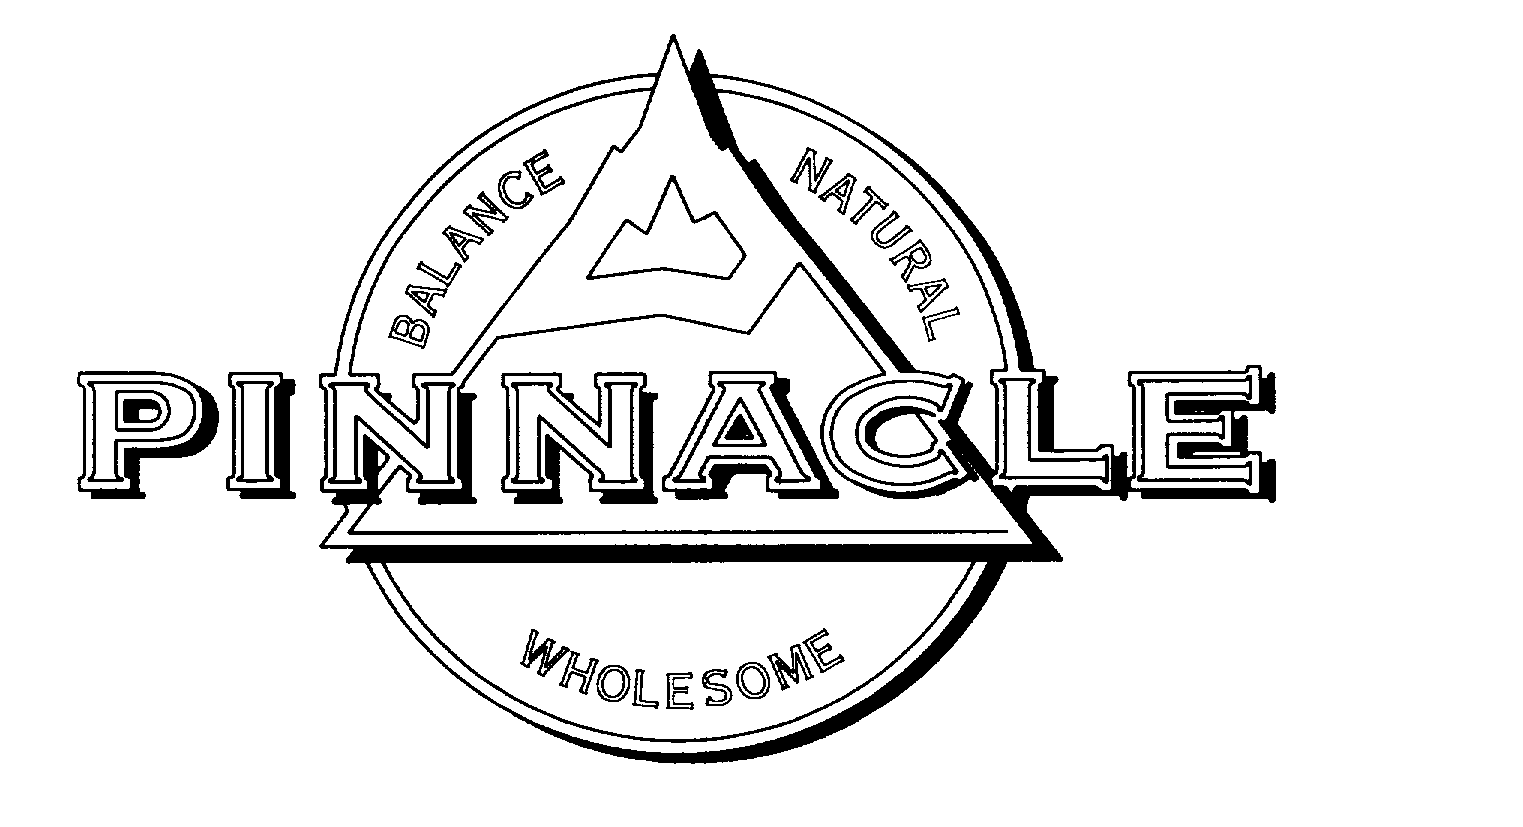 Trademark Logo PINNACLE BALANCE NATURAL WHOLESOME